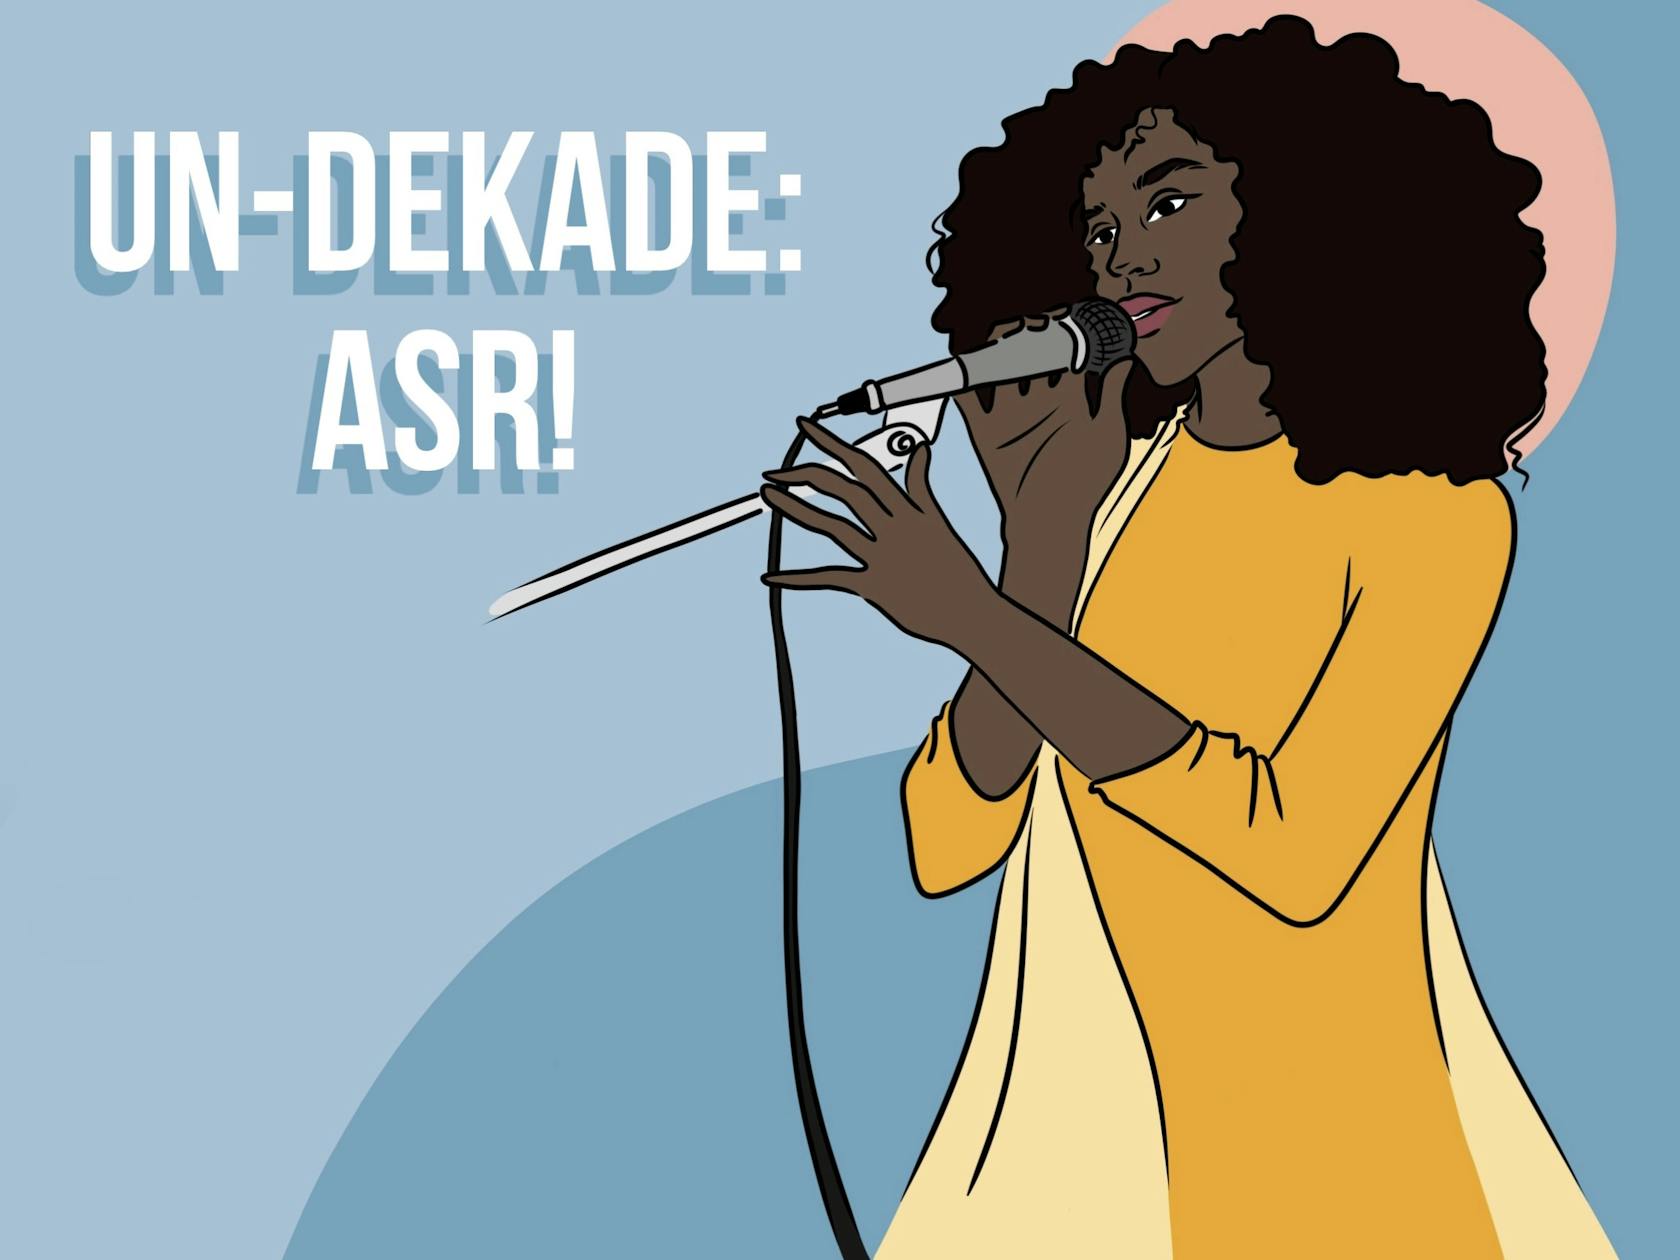 Die Abbildung zeigt eine Zeichnung einer Schwarzen Frau mit einem Mikrofon in der Hand. Die Grafik trägt die Überschrift "UN-DEKADE: ASR!"

